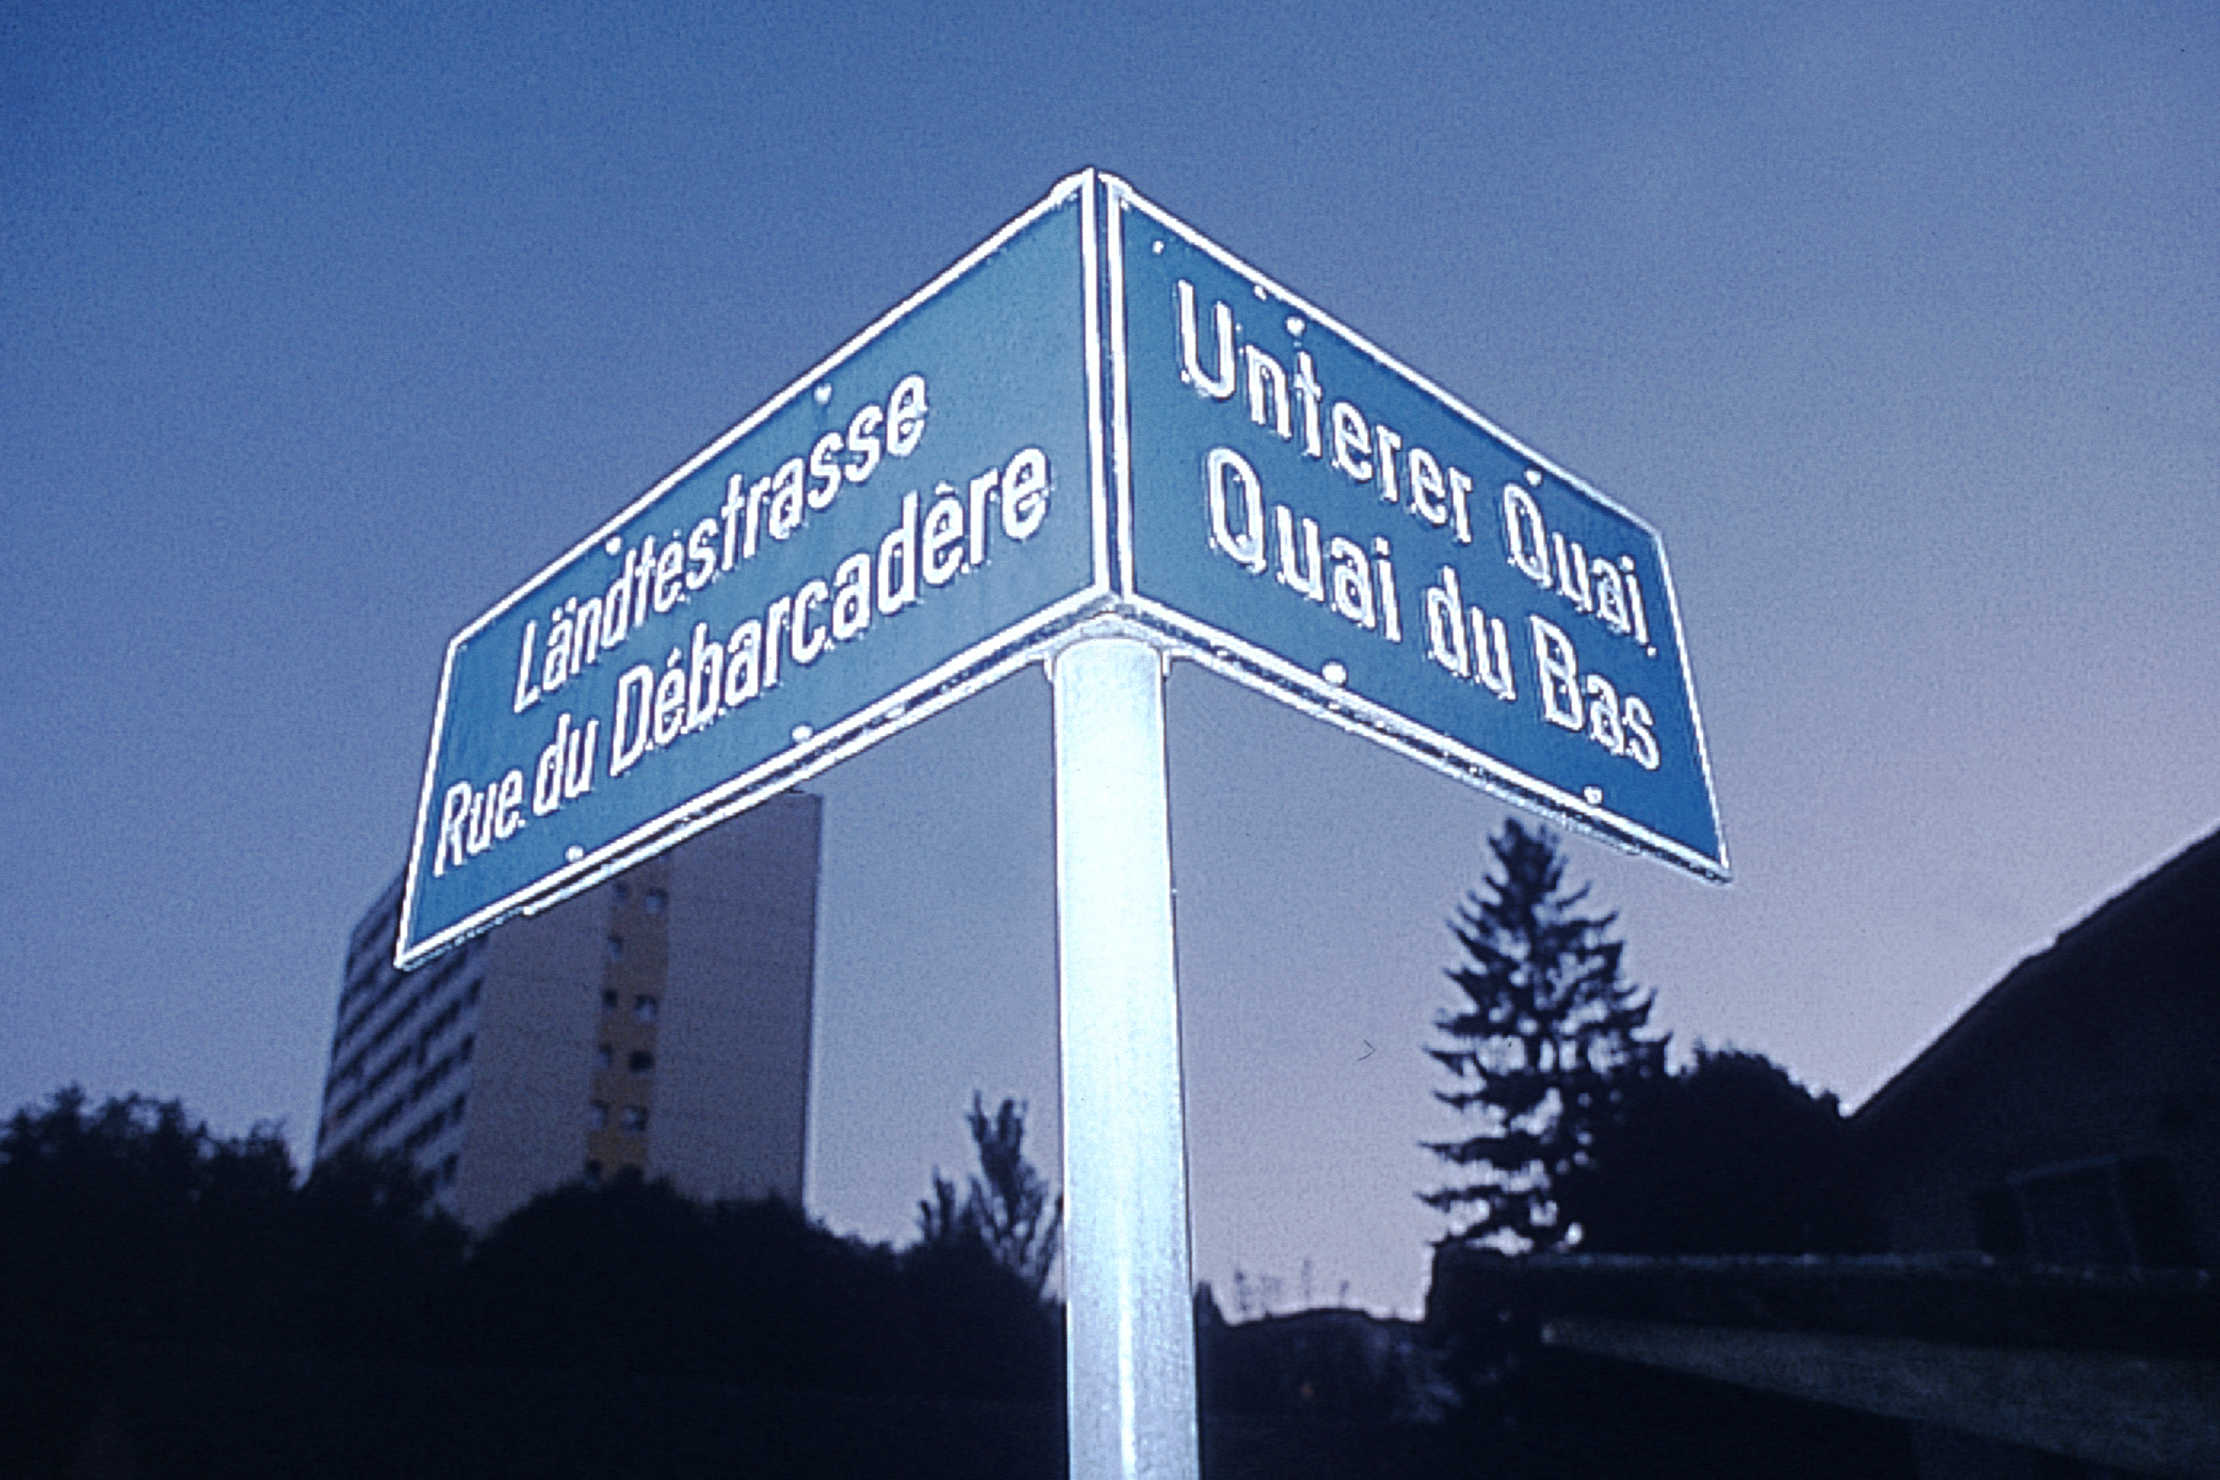 Bilingualism – Biel/Bienne is the largest bilingual city in Switzerland © Chambre économique Biel/Bienne Seeland